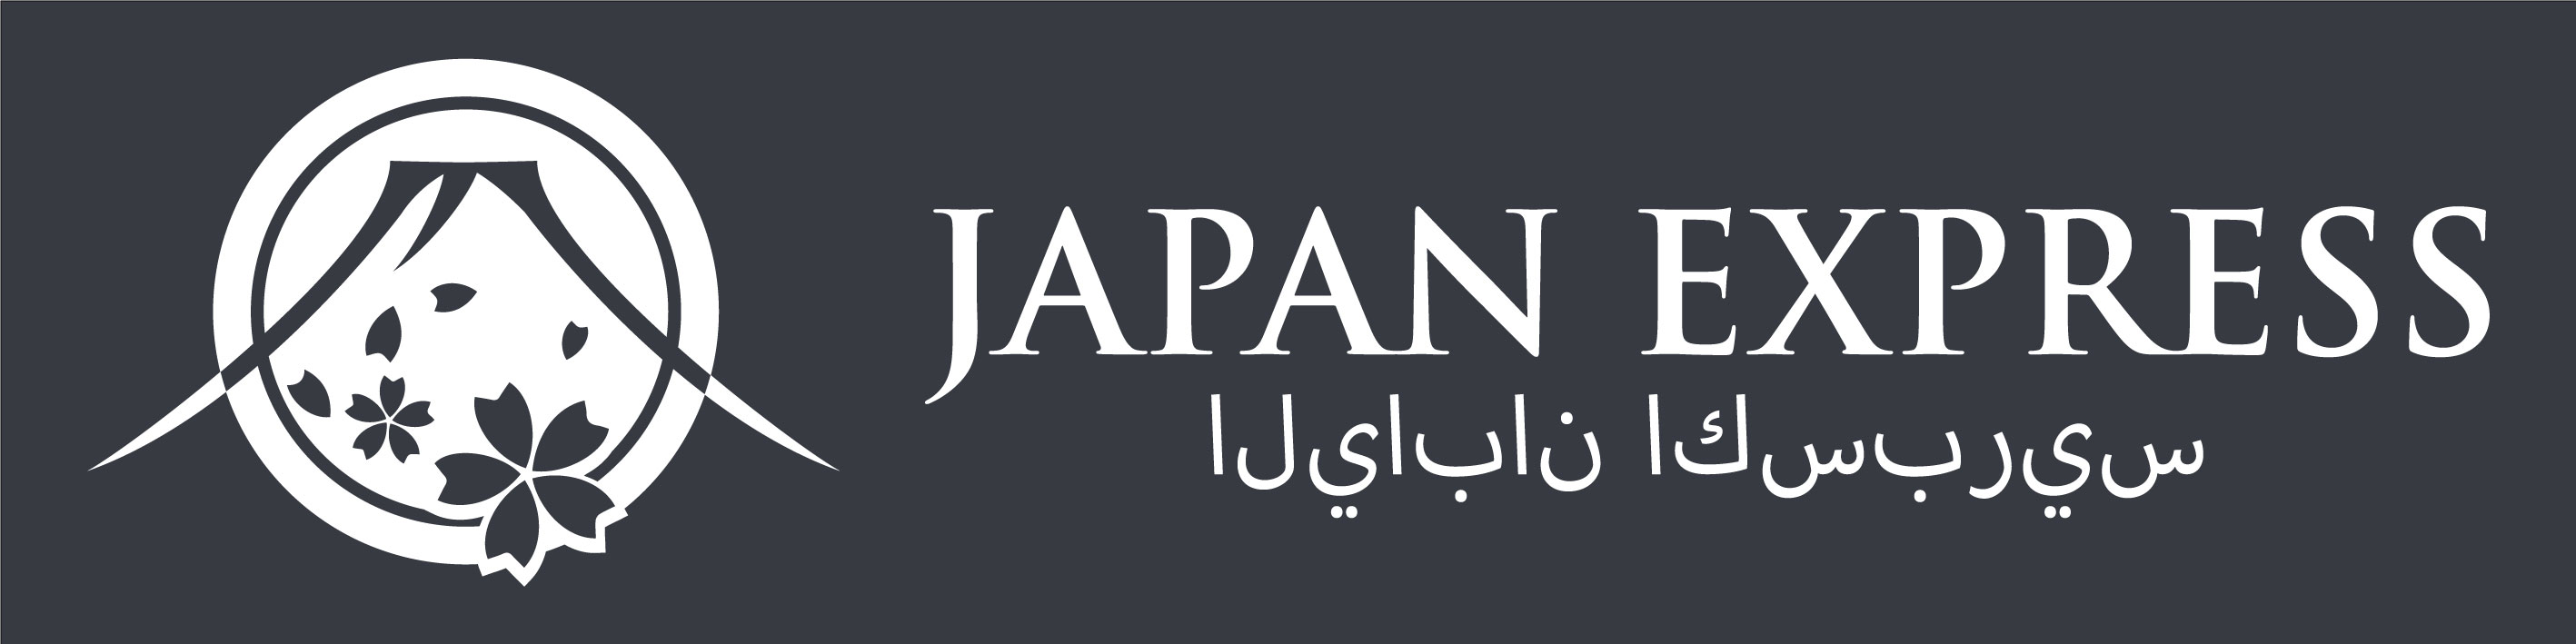 JAPAN EXPRESS